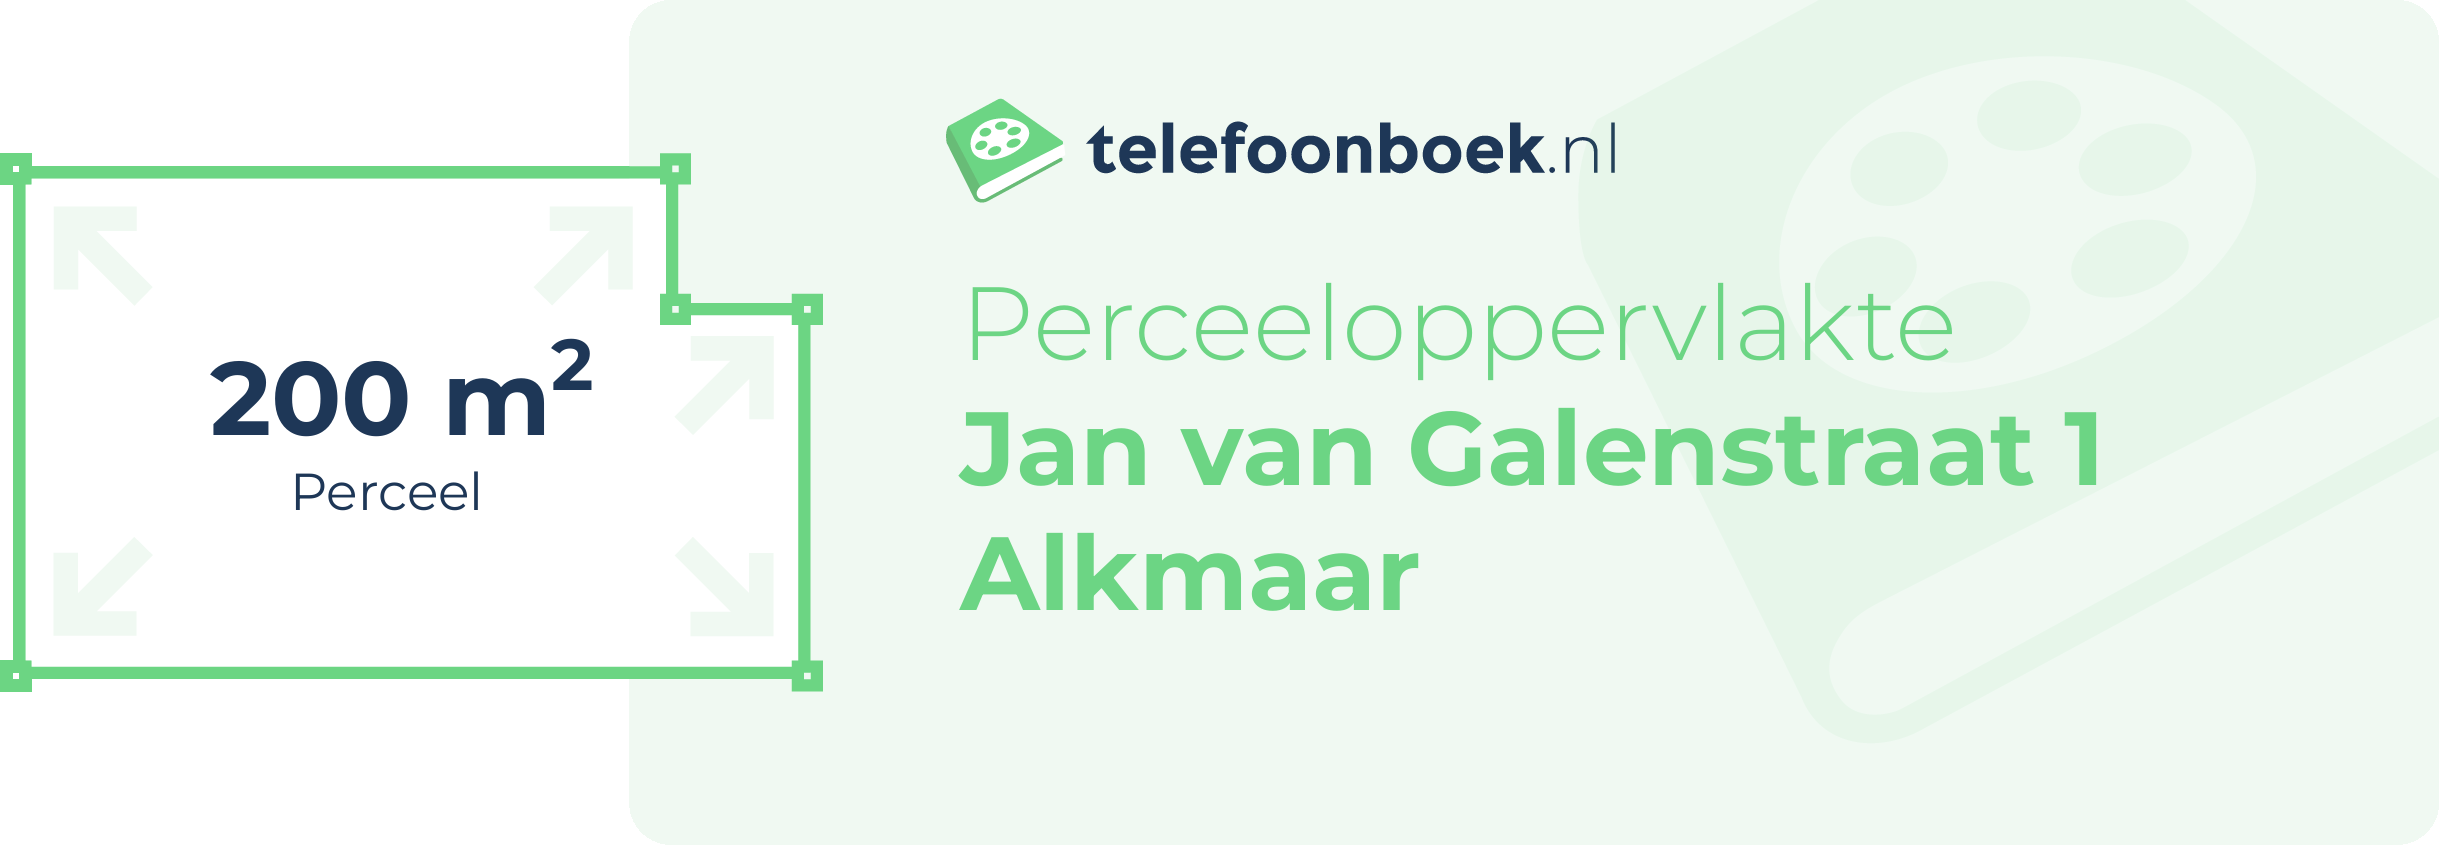 Perceeloppervlakte Jan Van Galenstraat 1 Alkmaar